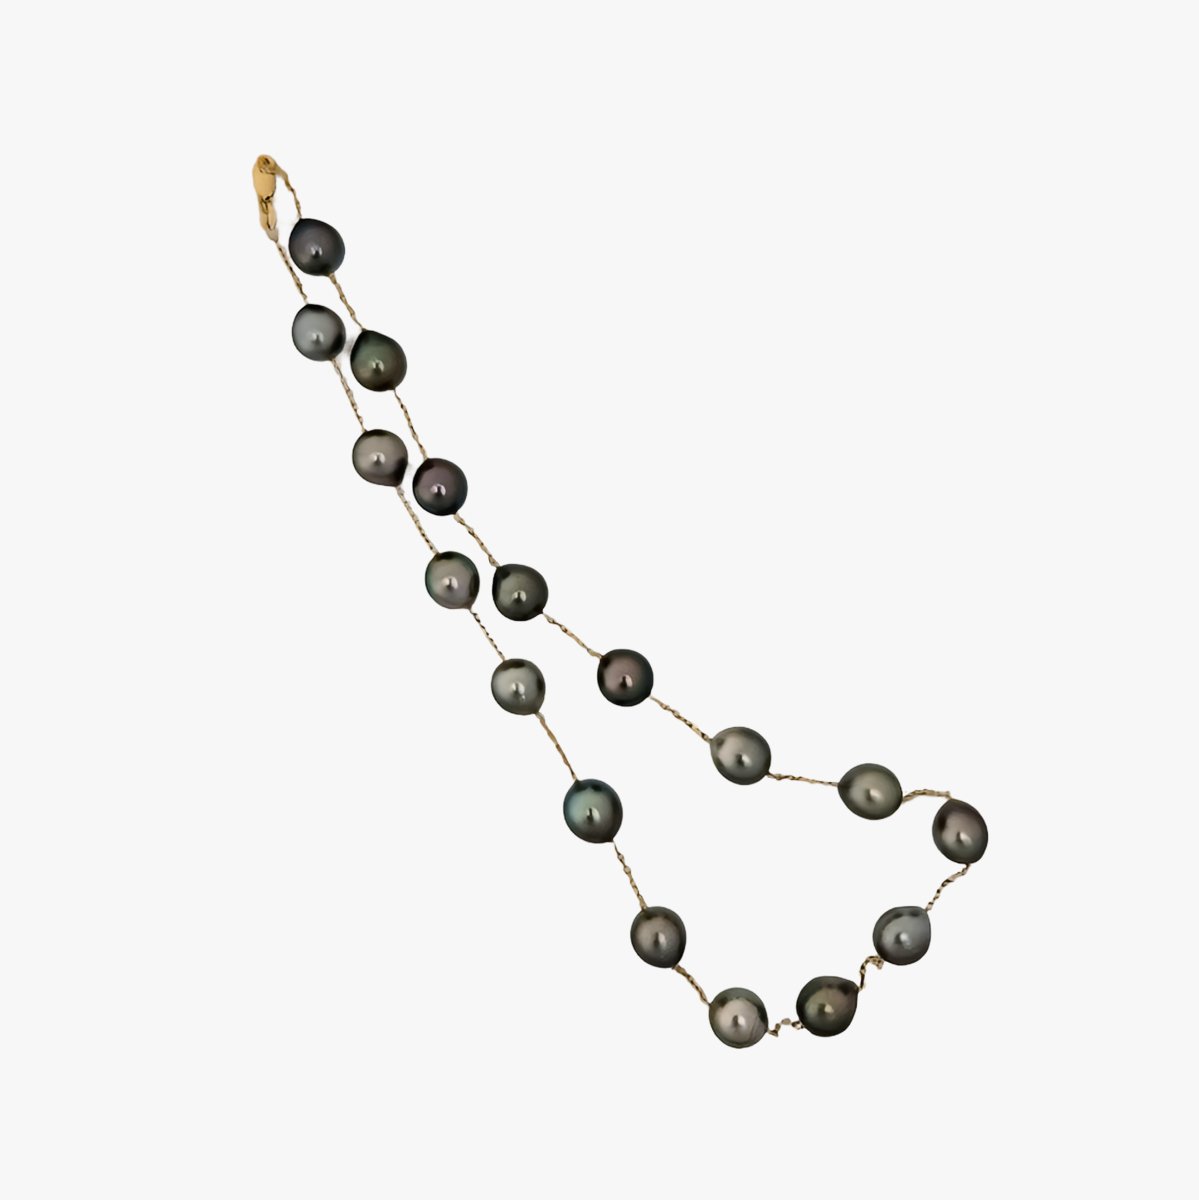 9-10mm Drops Tahitian Pearl Station Necklace - Marina Korneev Fine Pearls